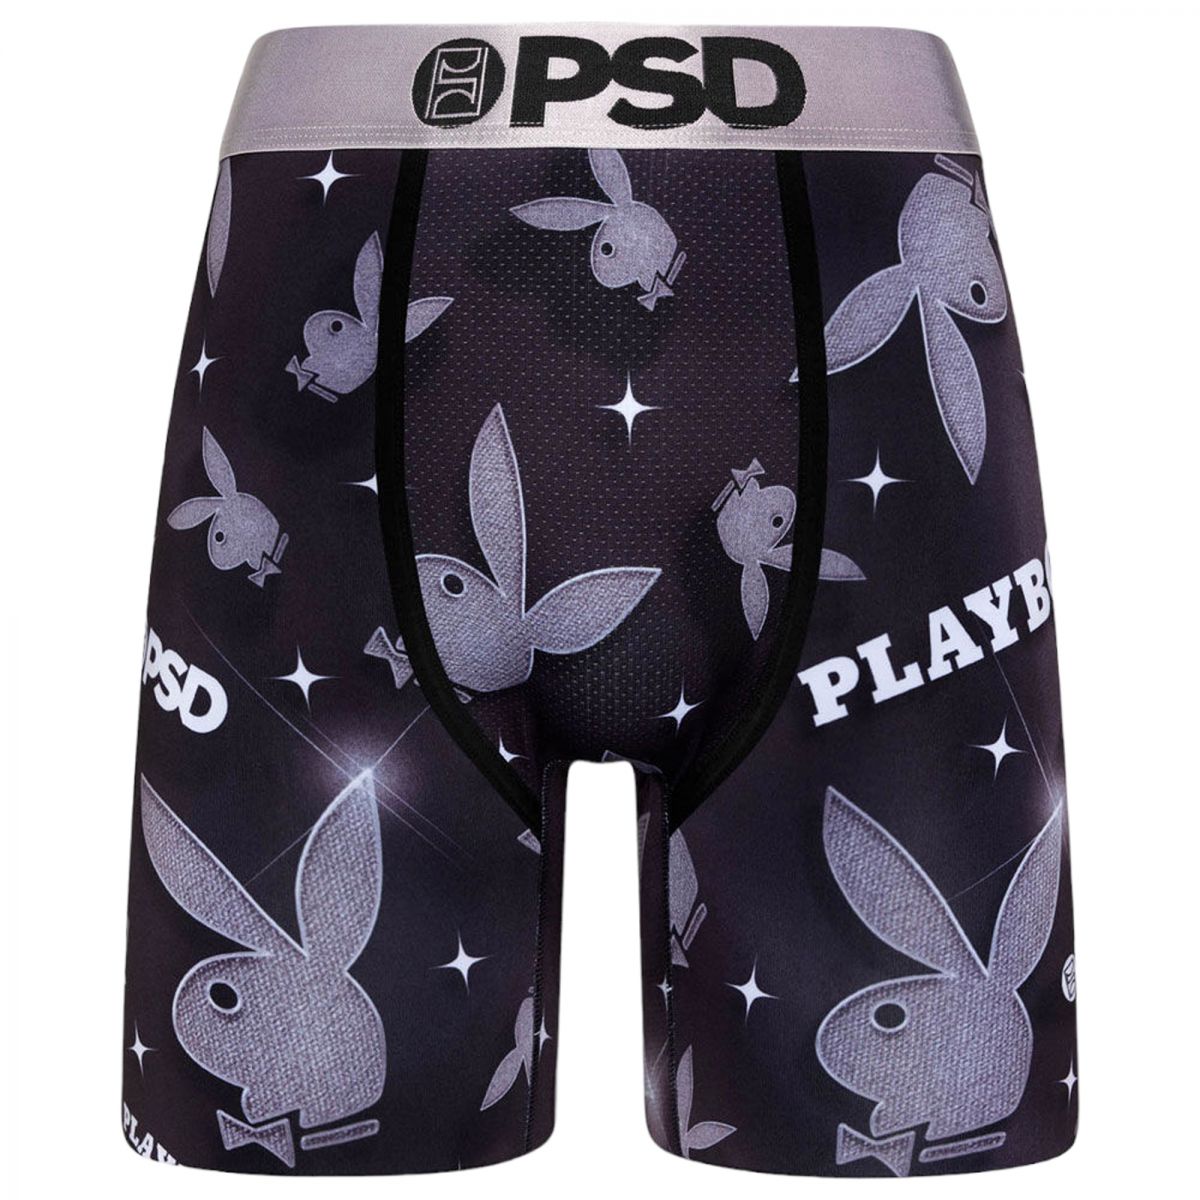 PSD UNDERWEAR Playboy Stones Boxer Briefs 323180004 - Karmaloop